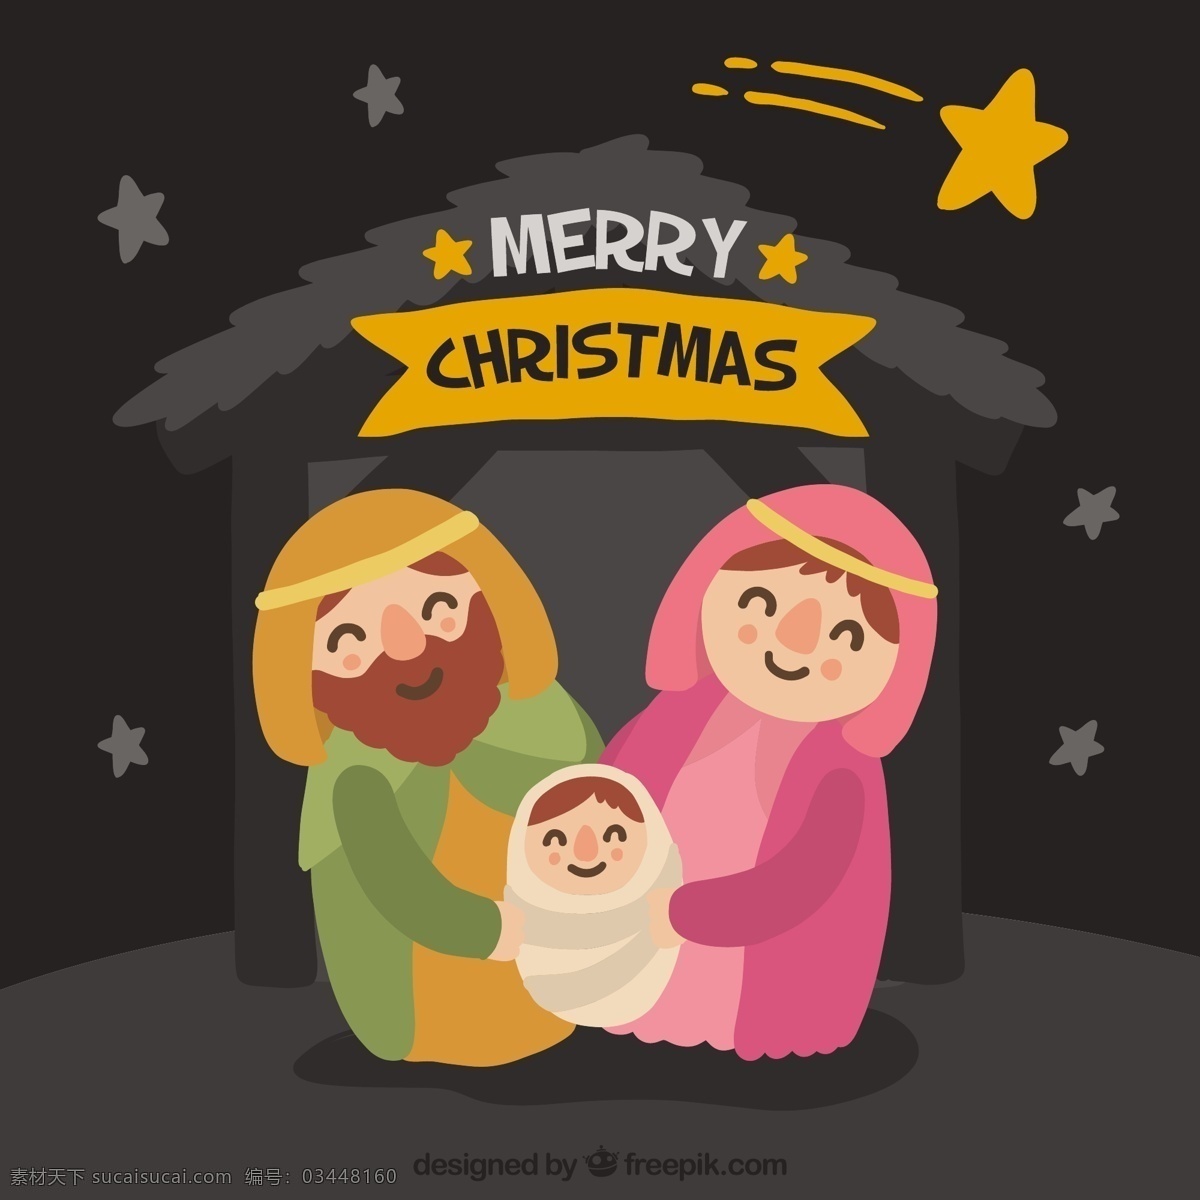 可爱 圣诞 马槽 场景 背景 圣诞节 一方面 明星 jesus 宗教的诞生 宗教 天主教 拍摄 不错 流星 婴儿床 基督 诞生 手画 传统 基督教